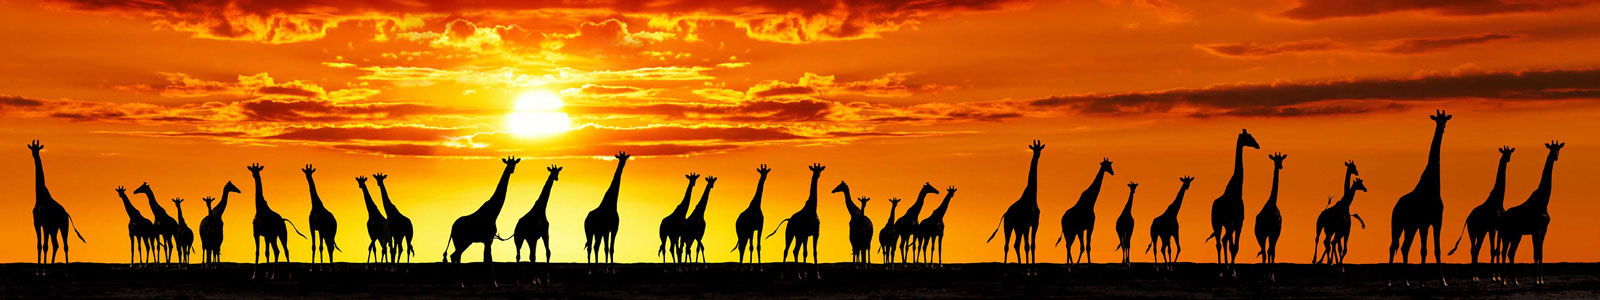 №4381 - Силуэты жирафов на фоне заката солнца